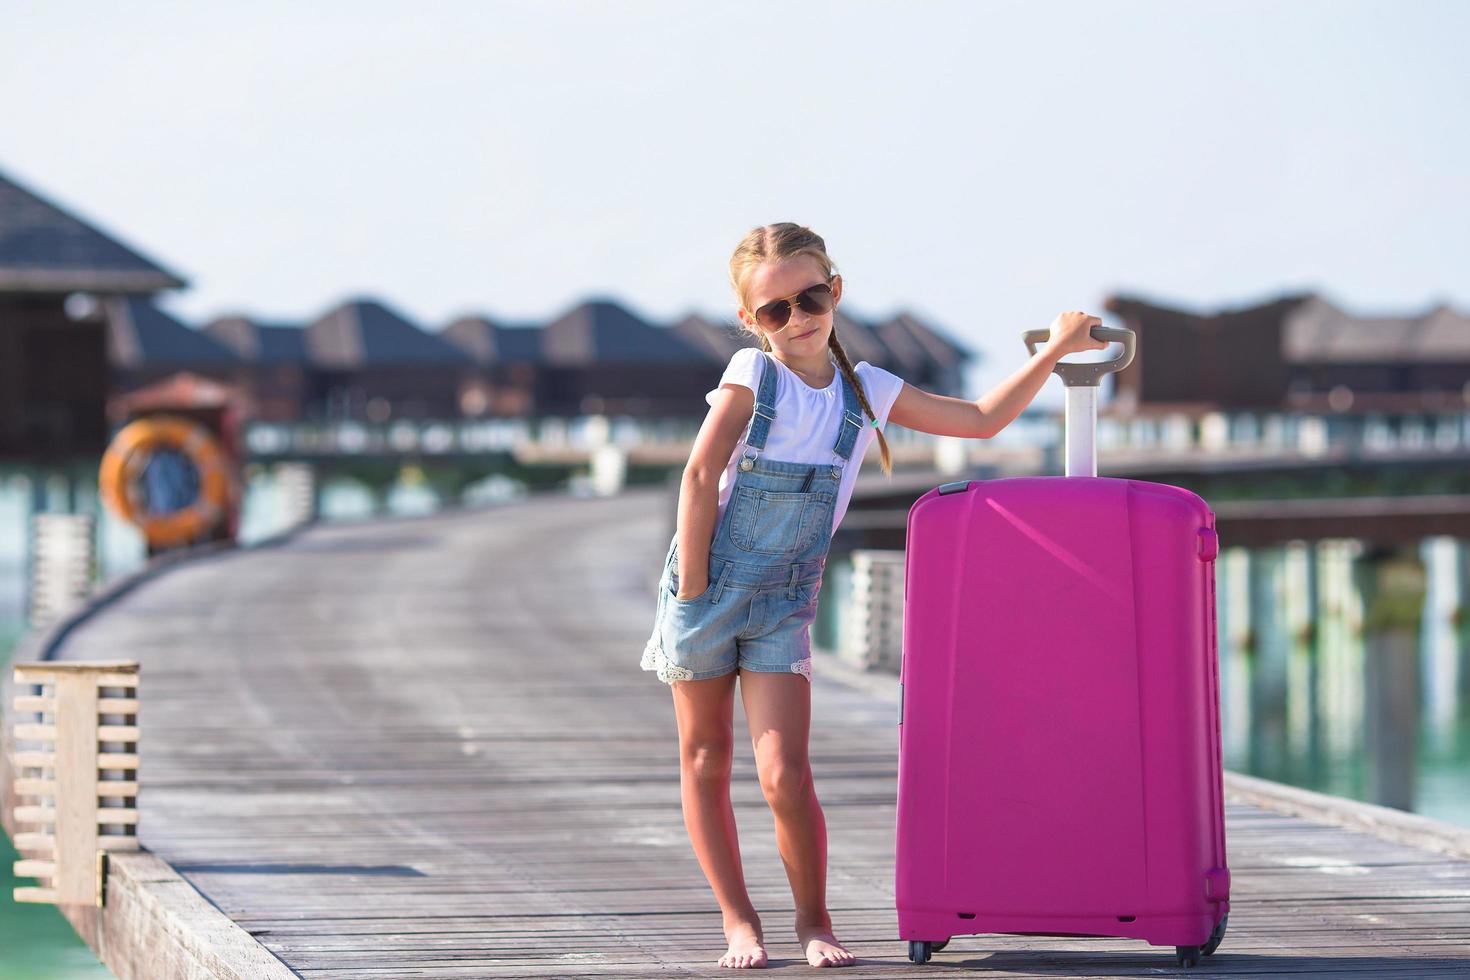 Maldives, South Asia, 2020 - Girl on summer vacation at a resort photo